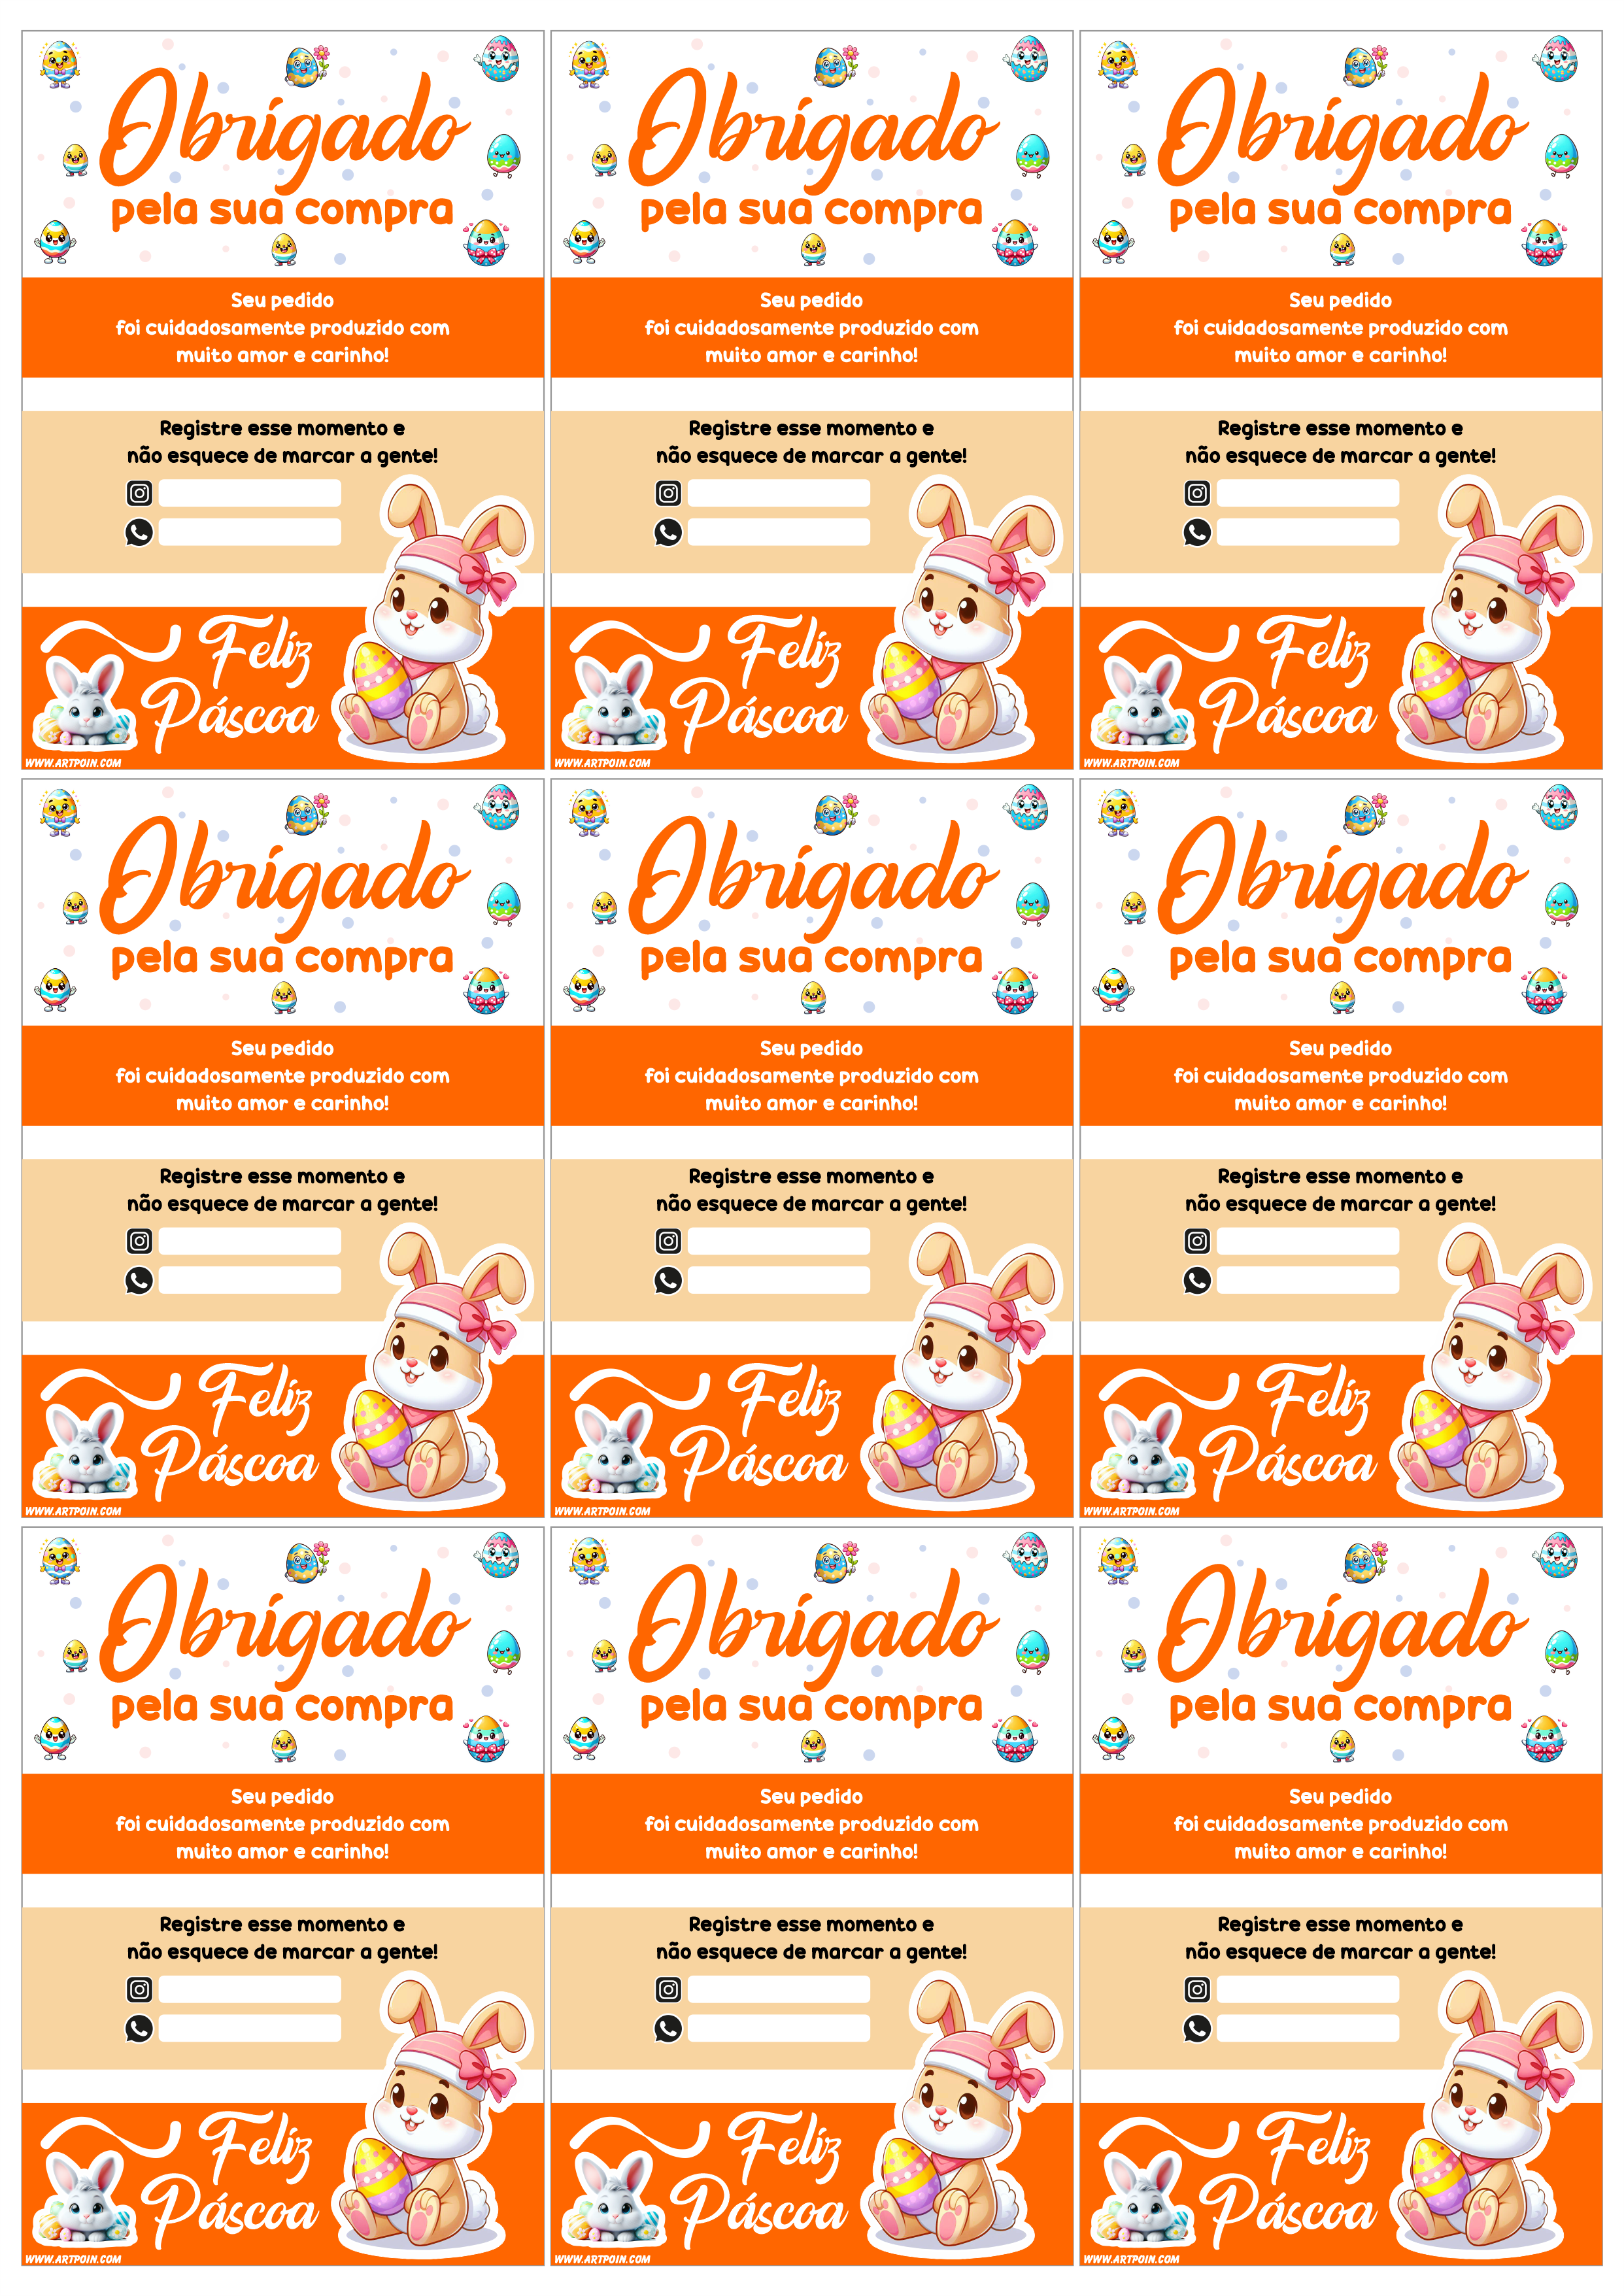 Cartão de agradecimento para cliente especial de páscoa obrigado pela sua compra grátis para imprimir laranja com branco 9 imagens png